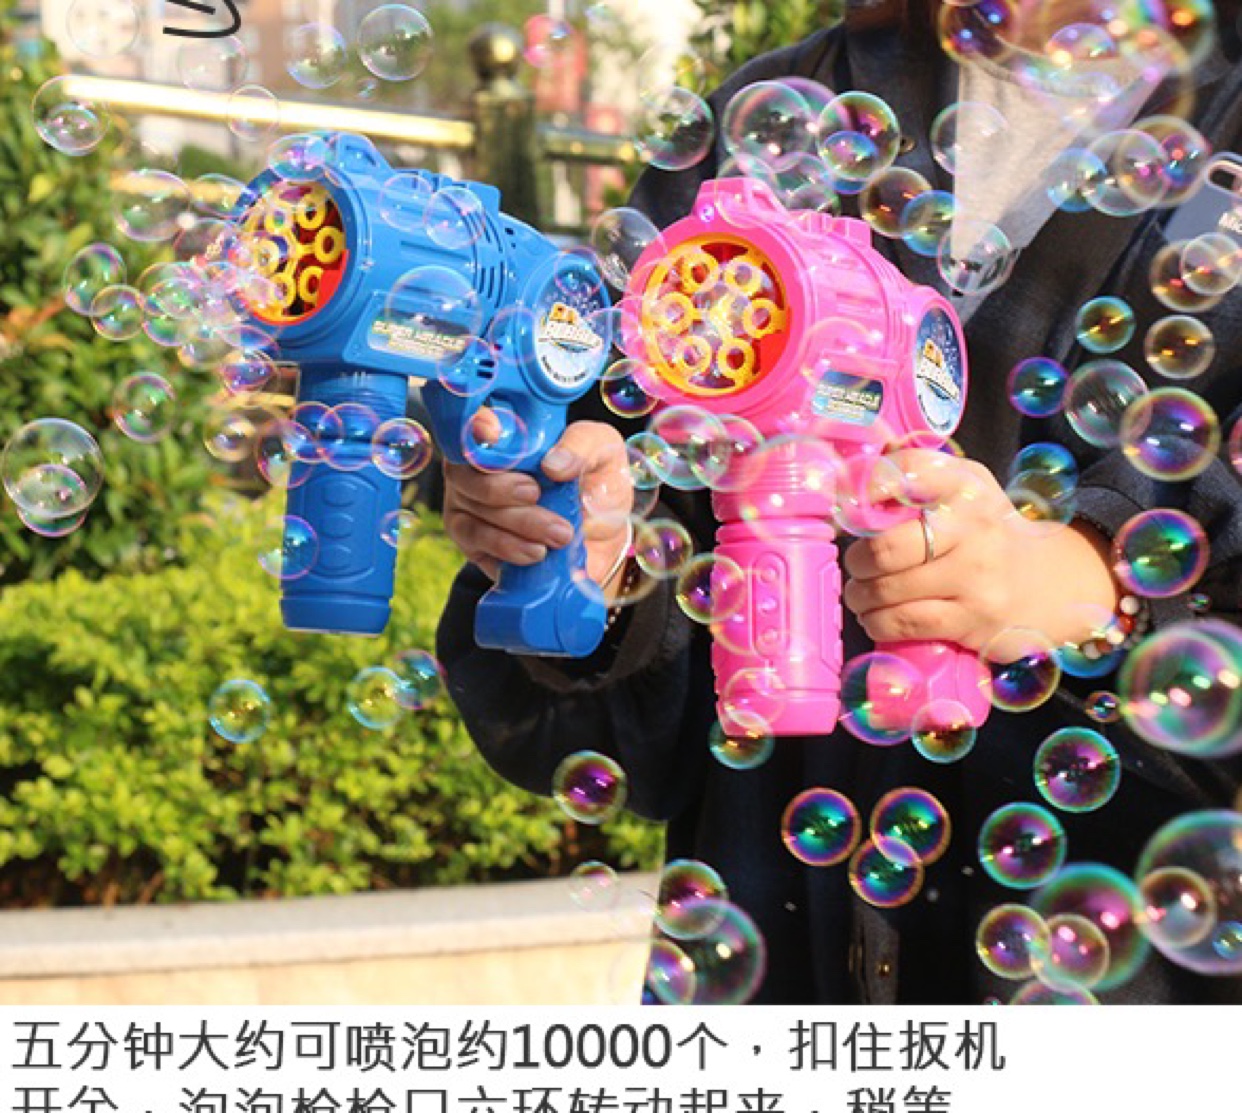 骏胜行舞台表演网红多孔出泡6孔大号电动泡泡枪儿童全自动吹泡泡机玩具详情图5